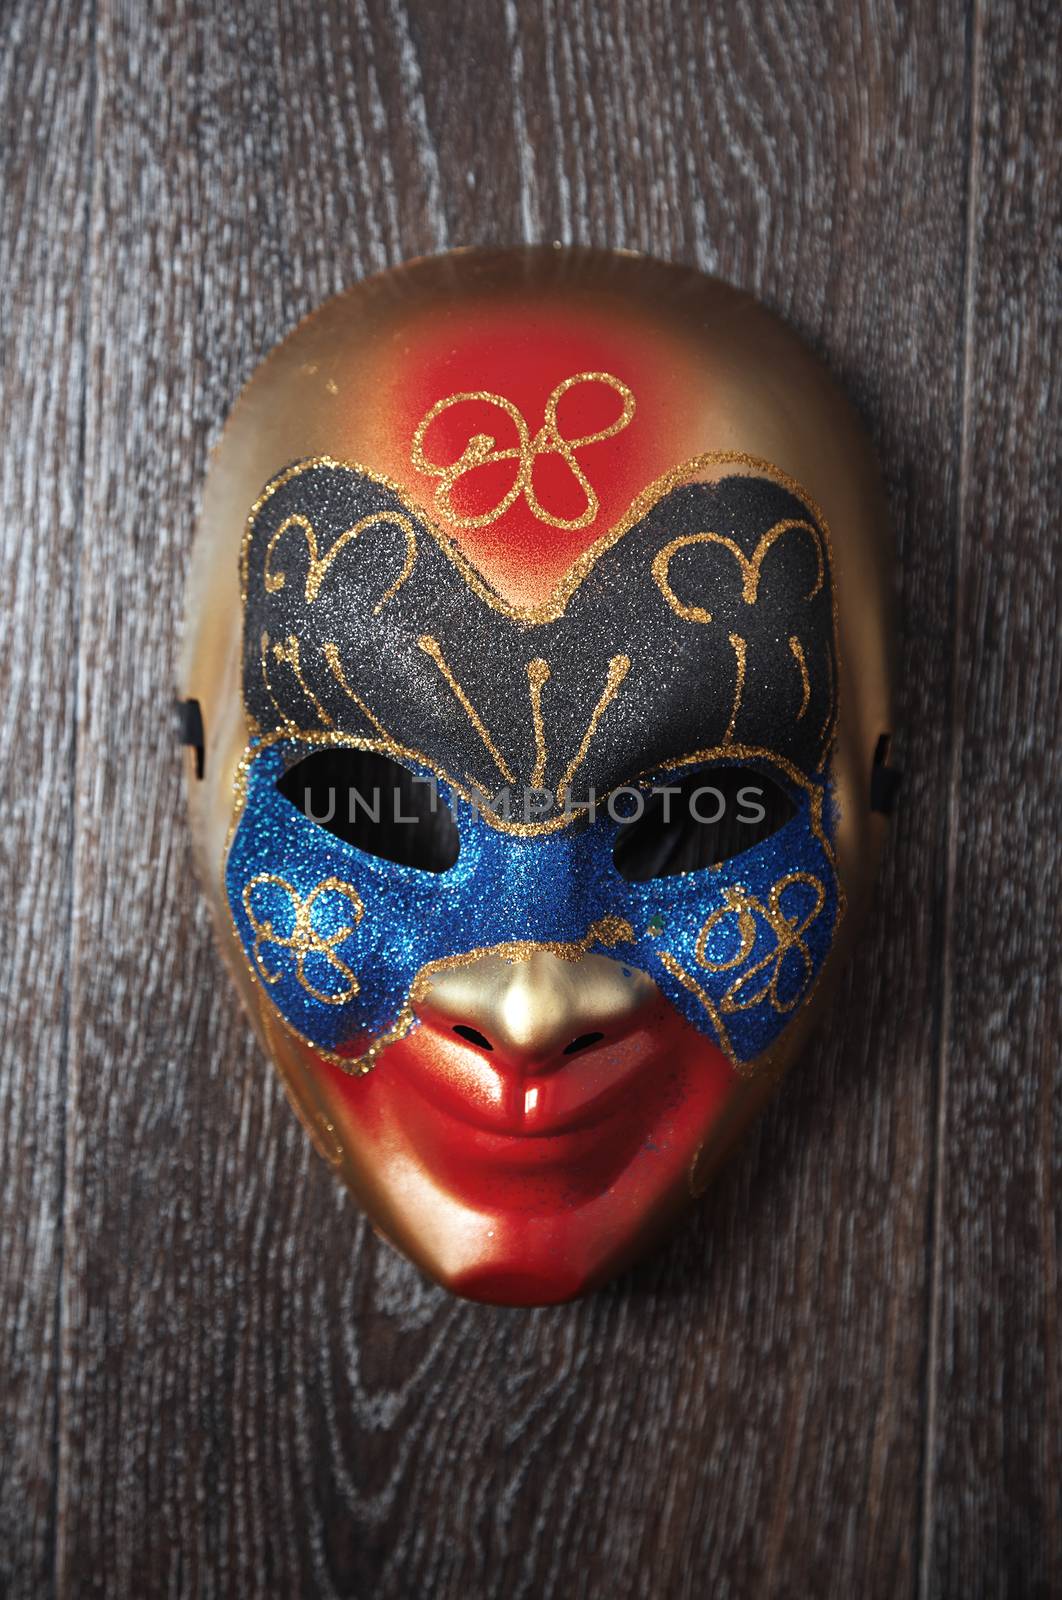 Carnival mask by Novic